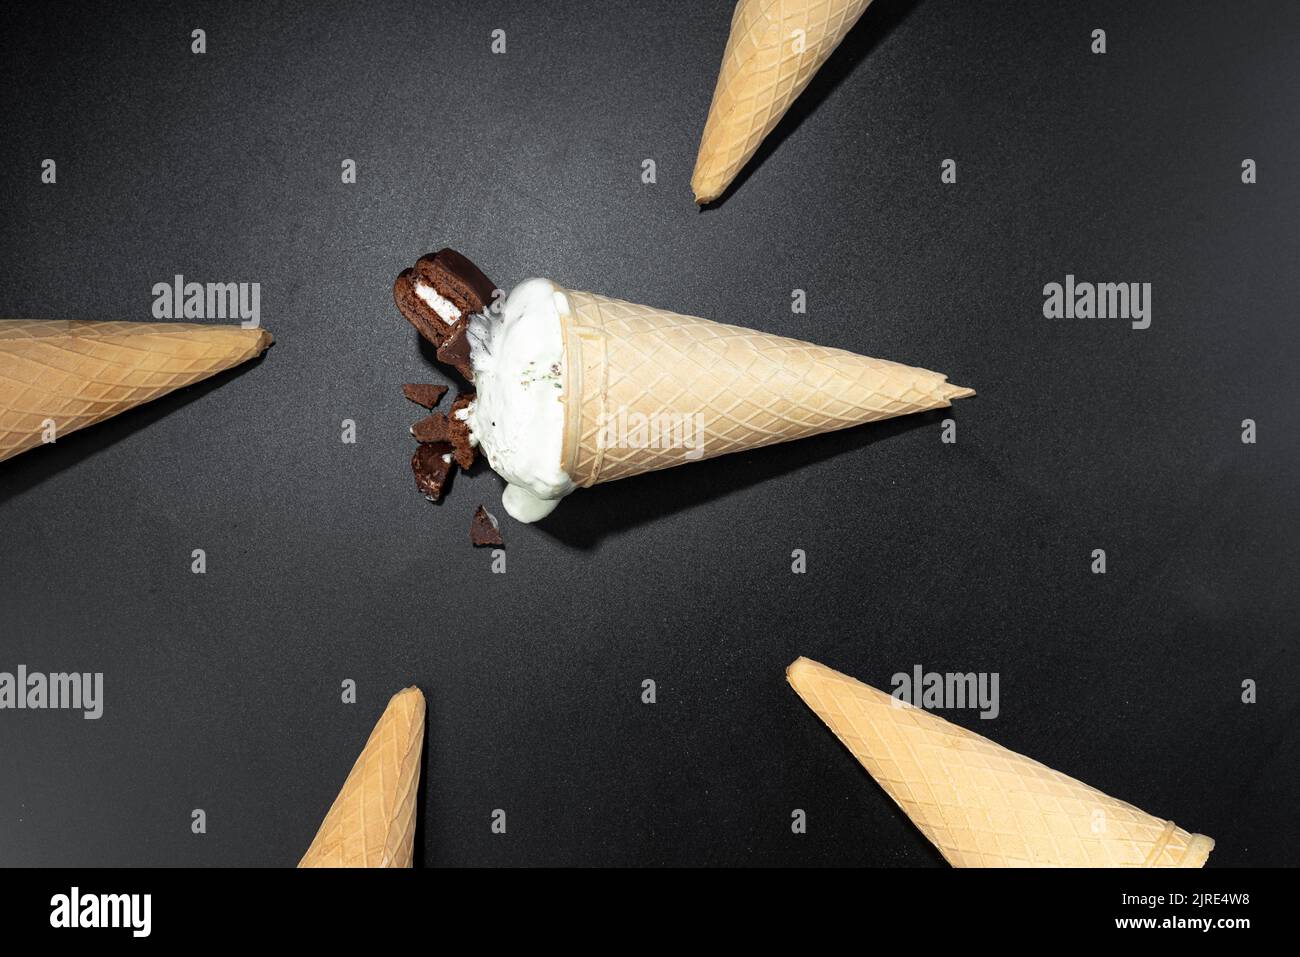 Biscotti fatti in casa e gelato al cono gelato, foto di sfondo scuro con flash. Cibo flashy gelato Foto Stock